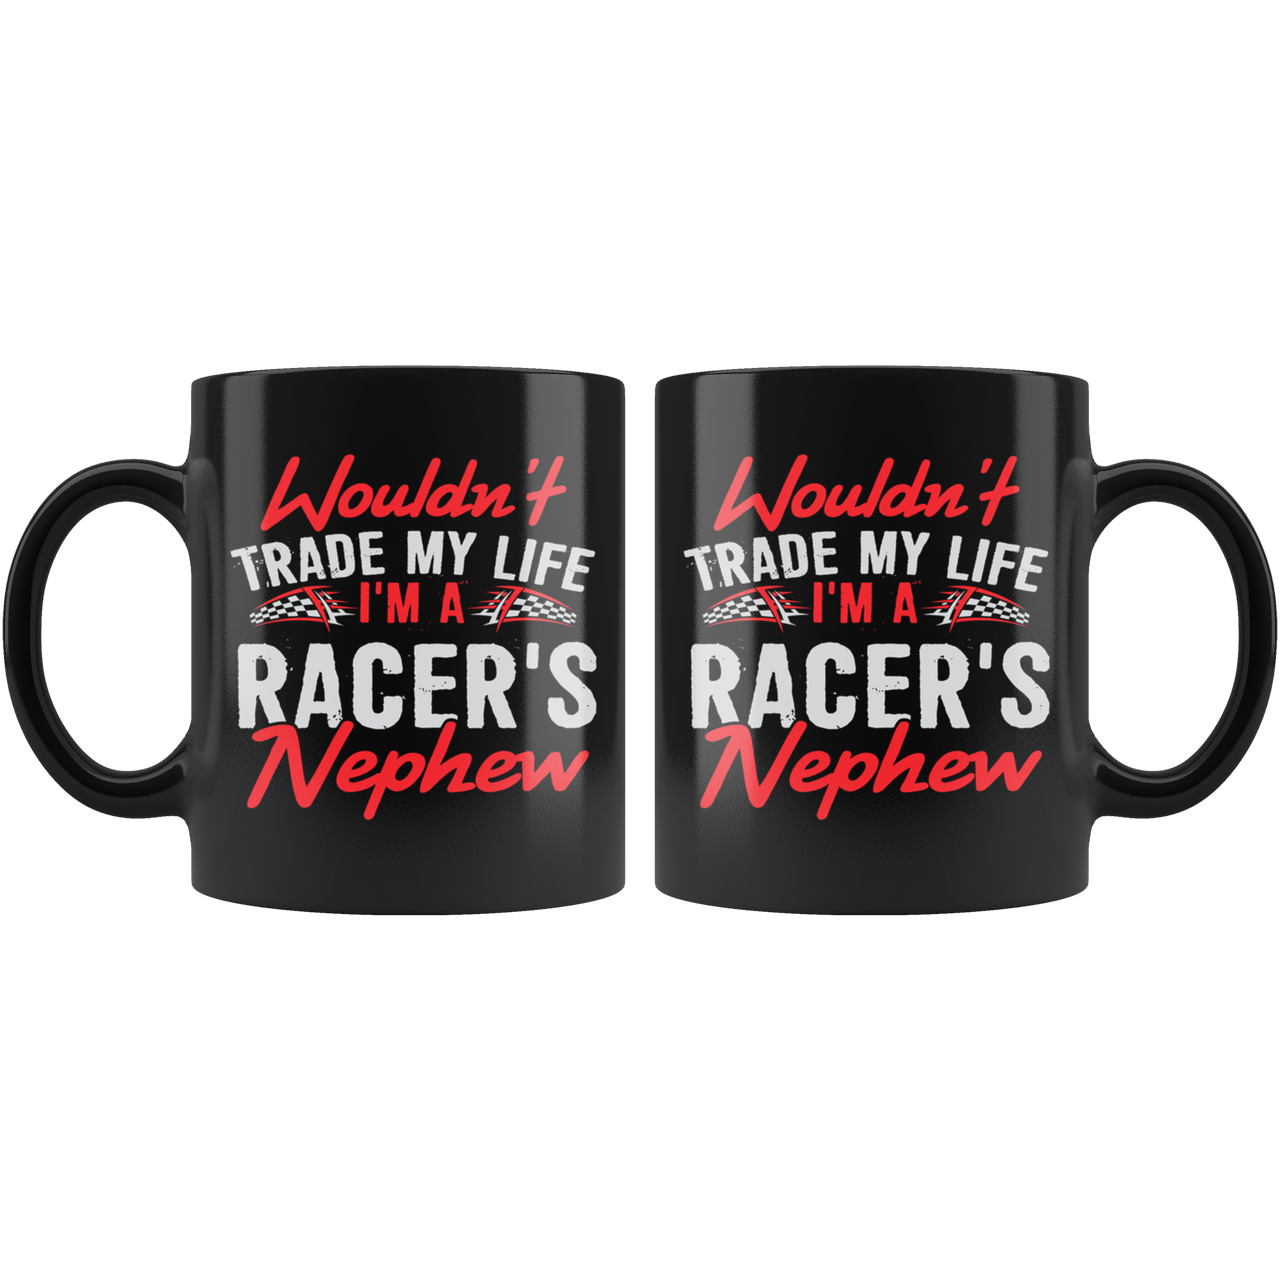 Wouldn't Trade My Life I'm A Racer's Nephew Mug!